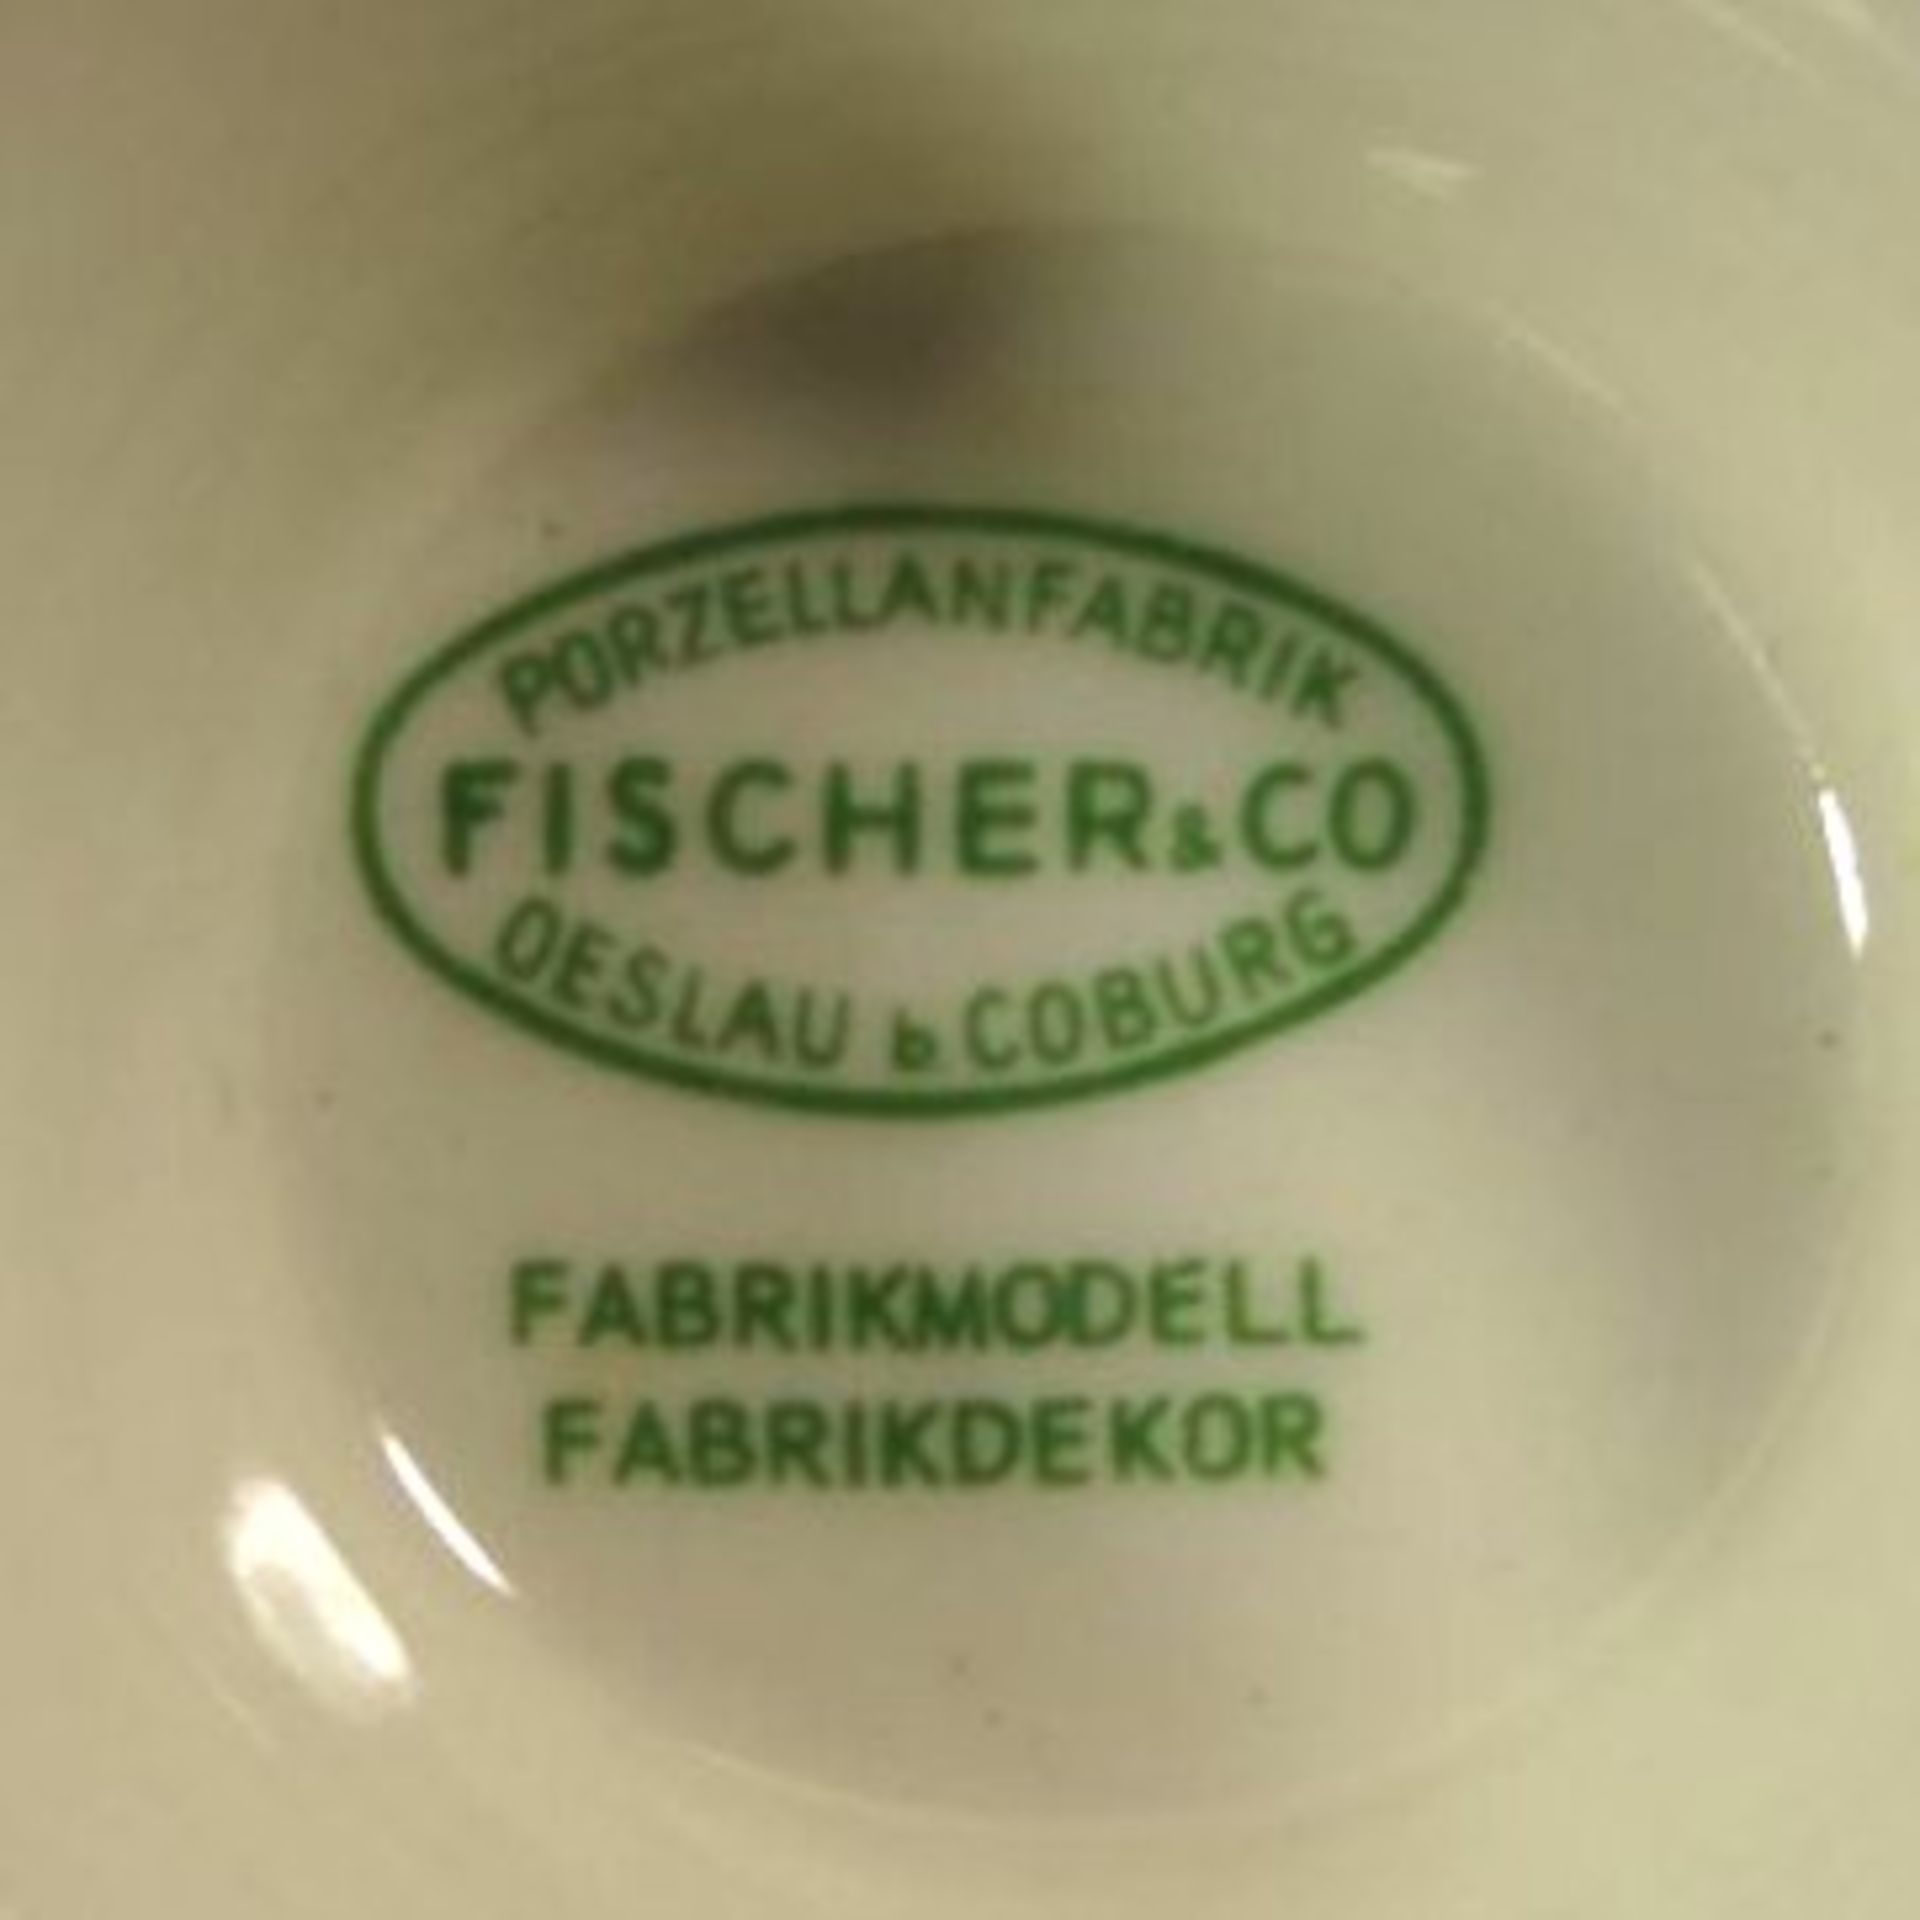 Werbeascher, Buerlicithin, Fischer & Co Oeslau b. Coburg, guter Zustand, H-7cm ca. D-15cm. - Bild 2 aus 2